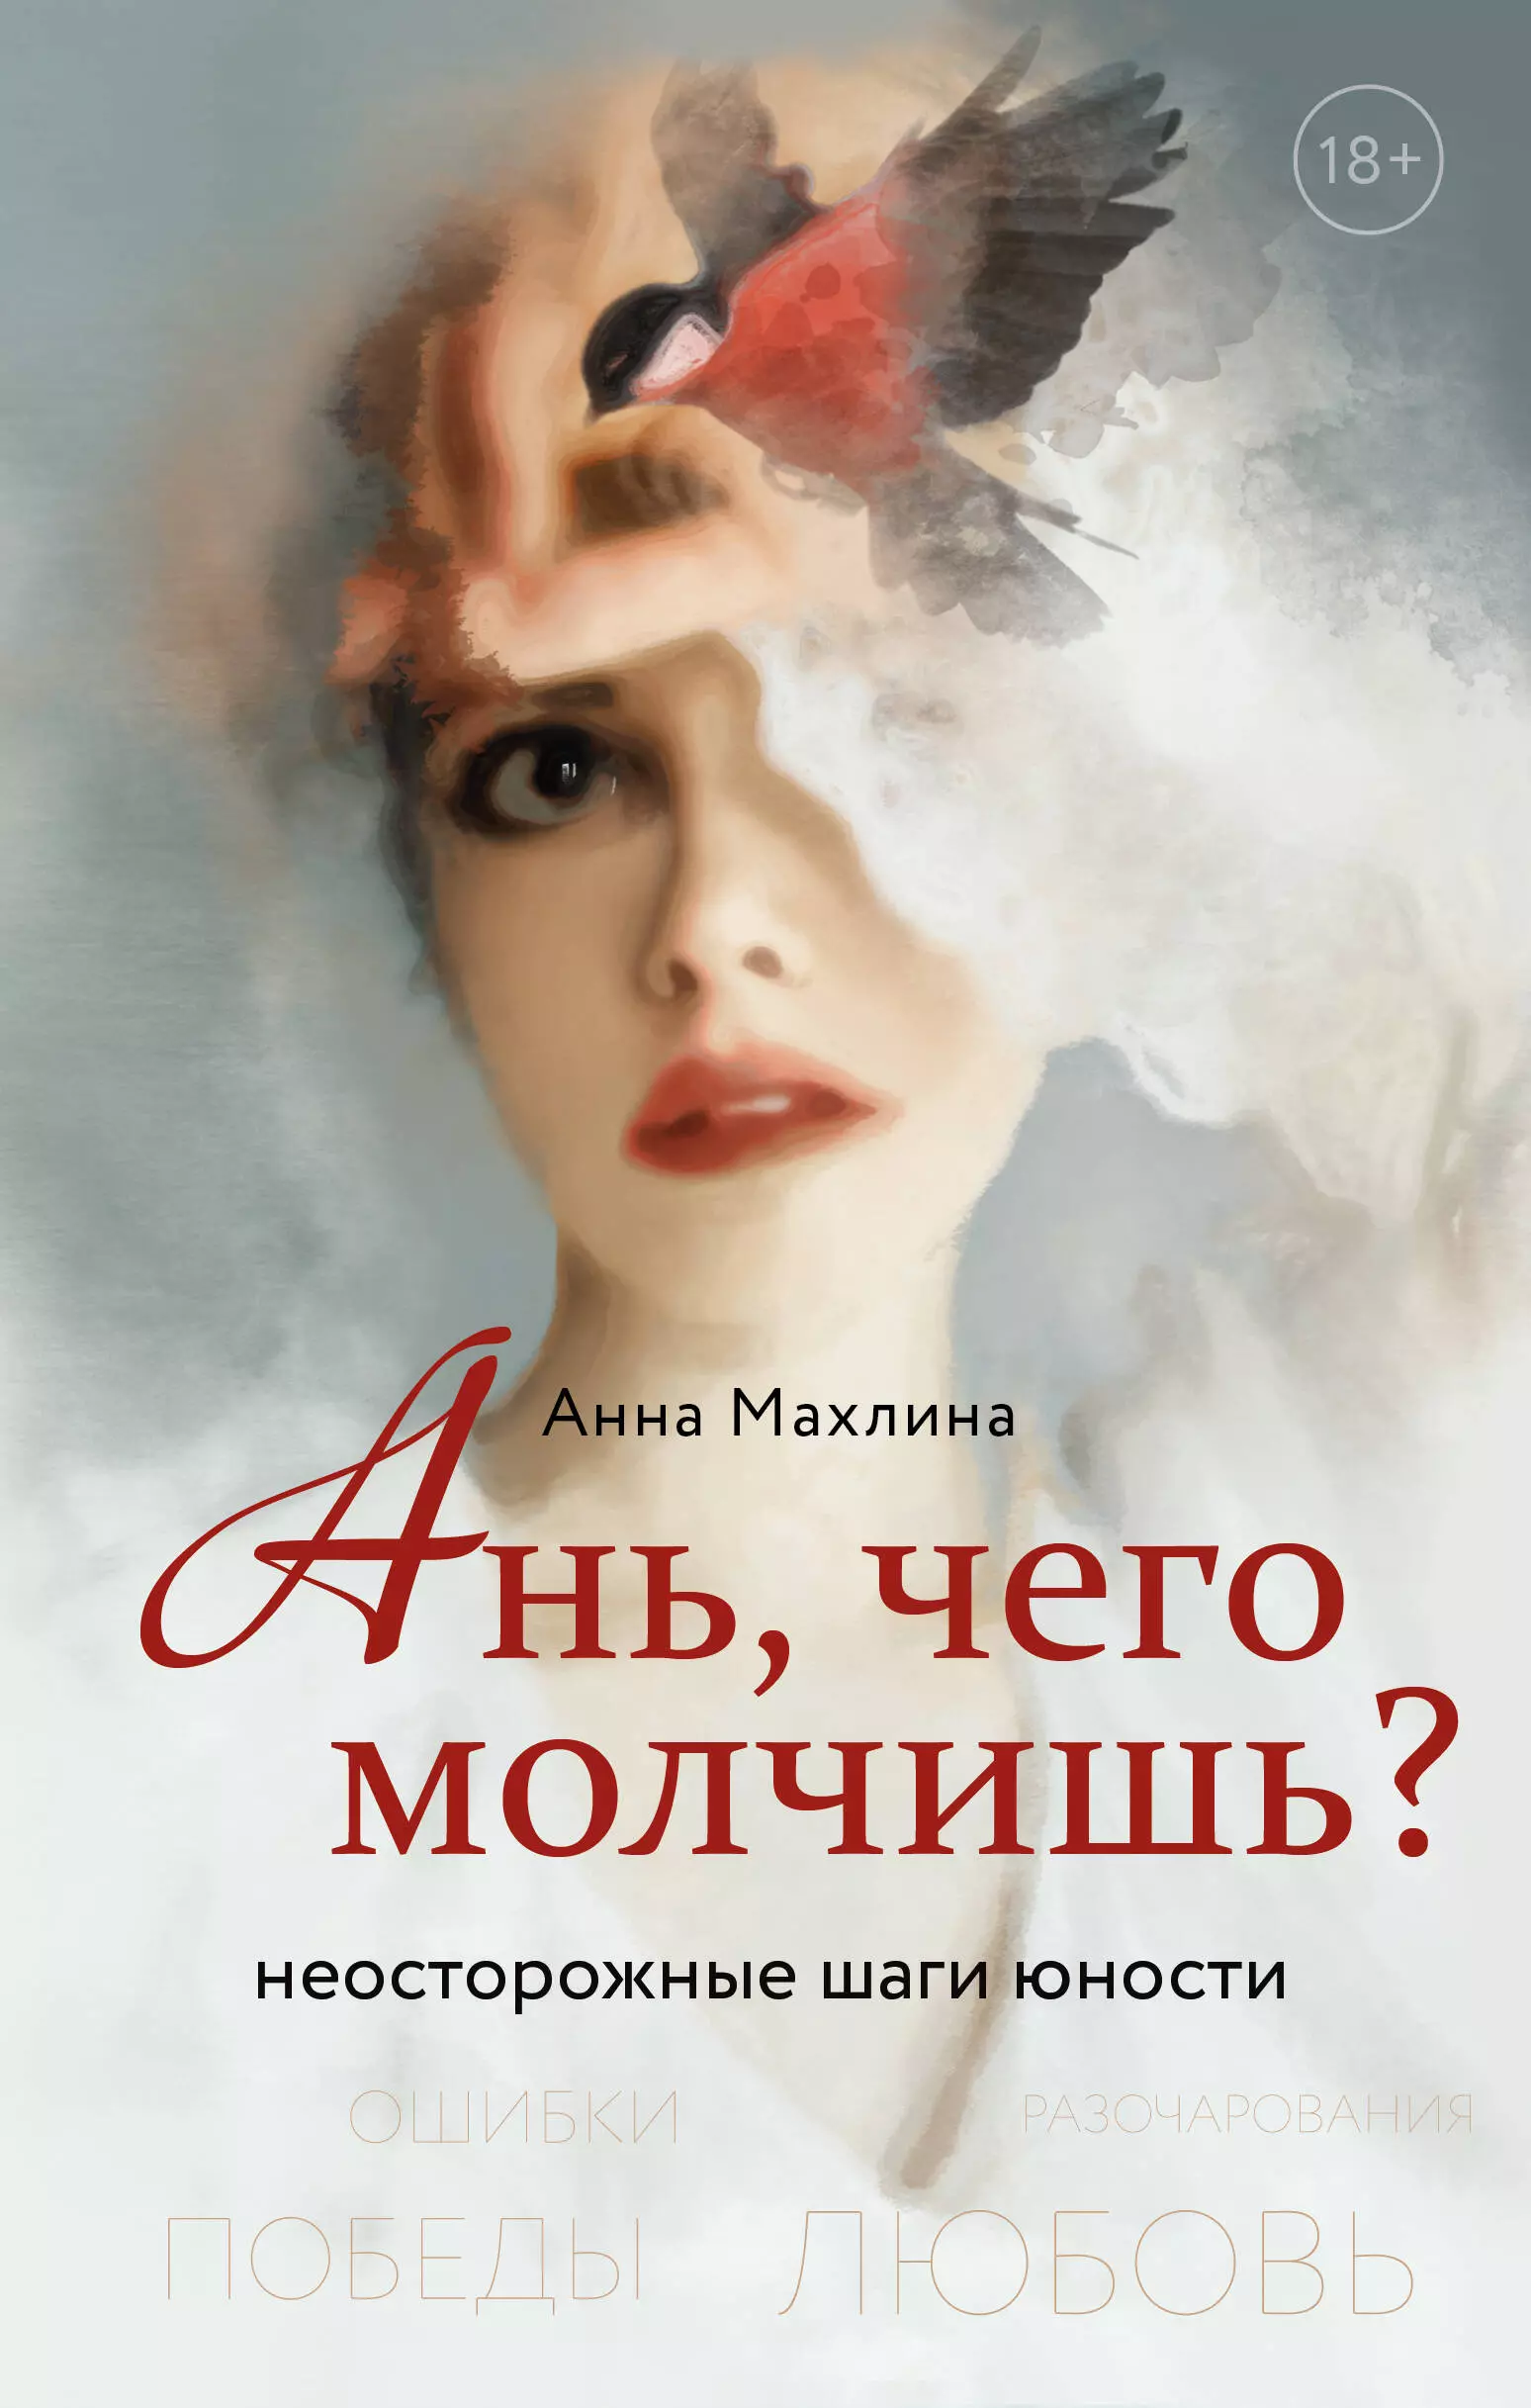 Махлина Анна Николаевна - Ань, чего молчишь? Неосторожные шаги юности